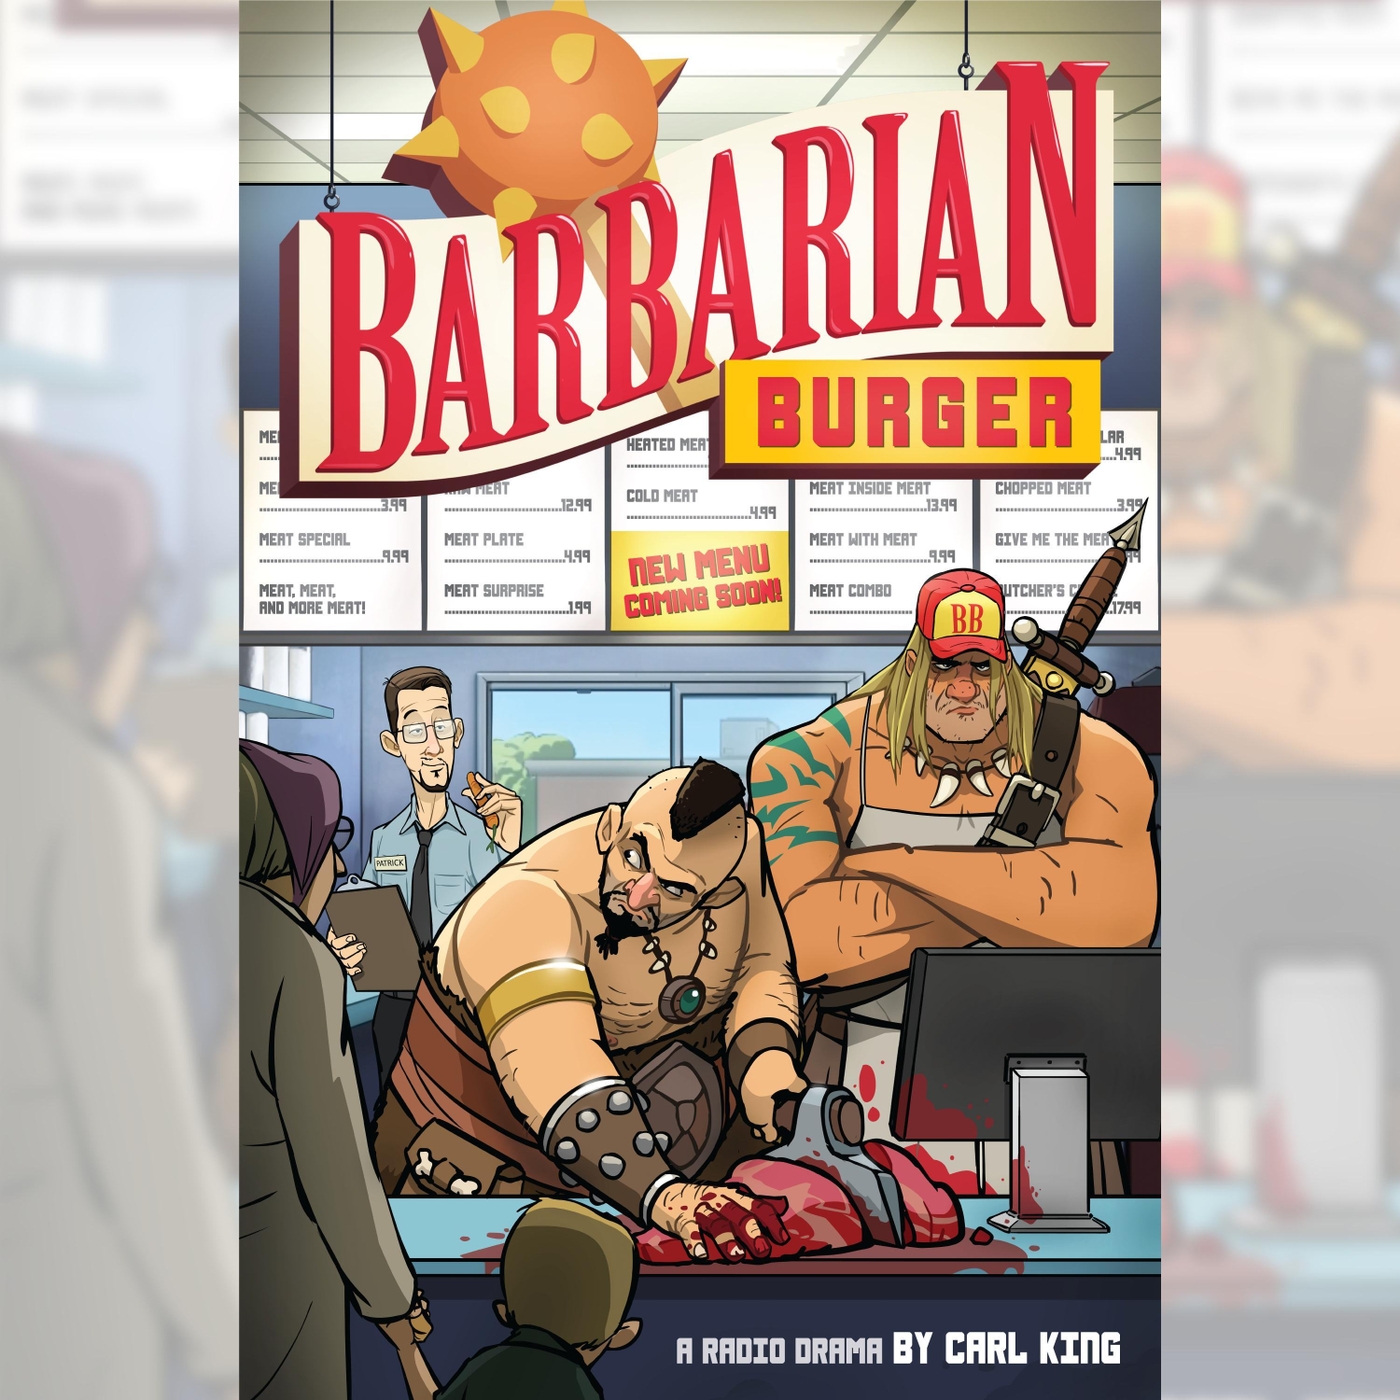 Barbarian Burger